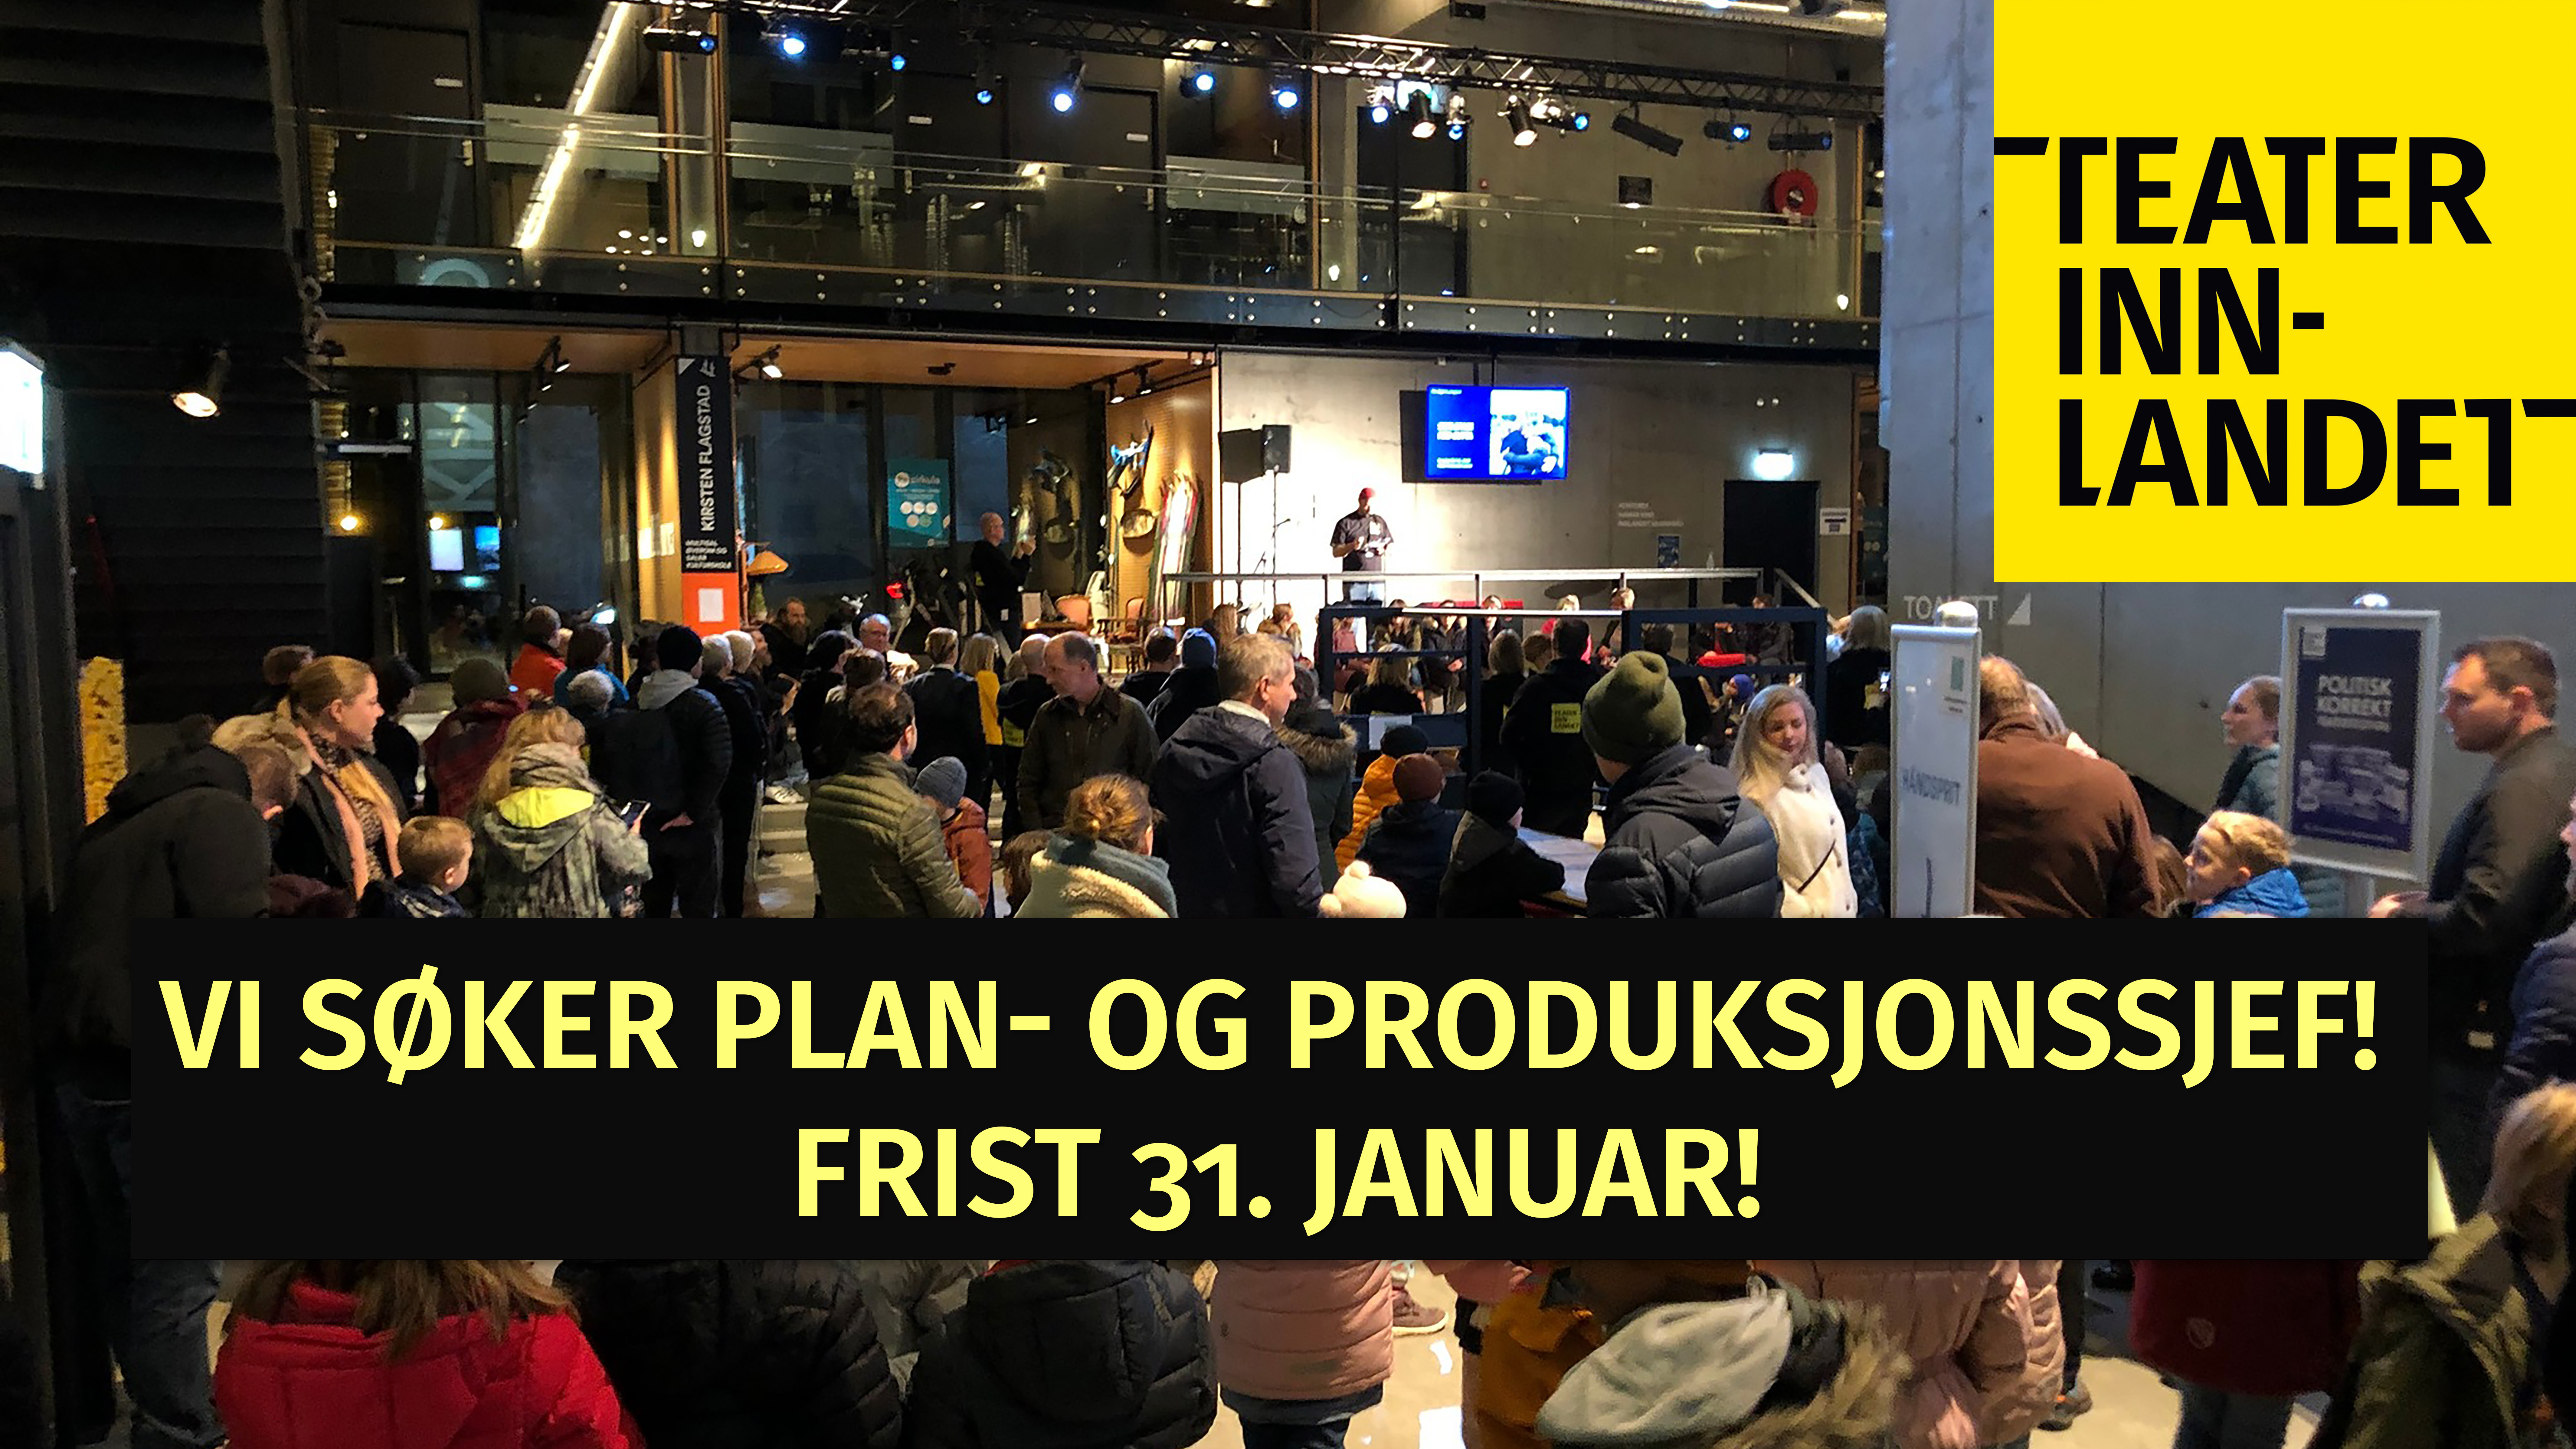 Teater Innlandet søker plan og produksjonssjef